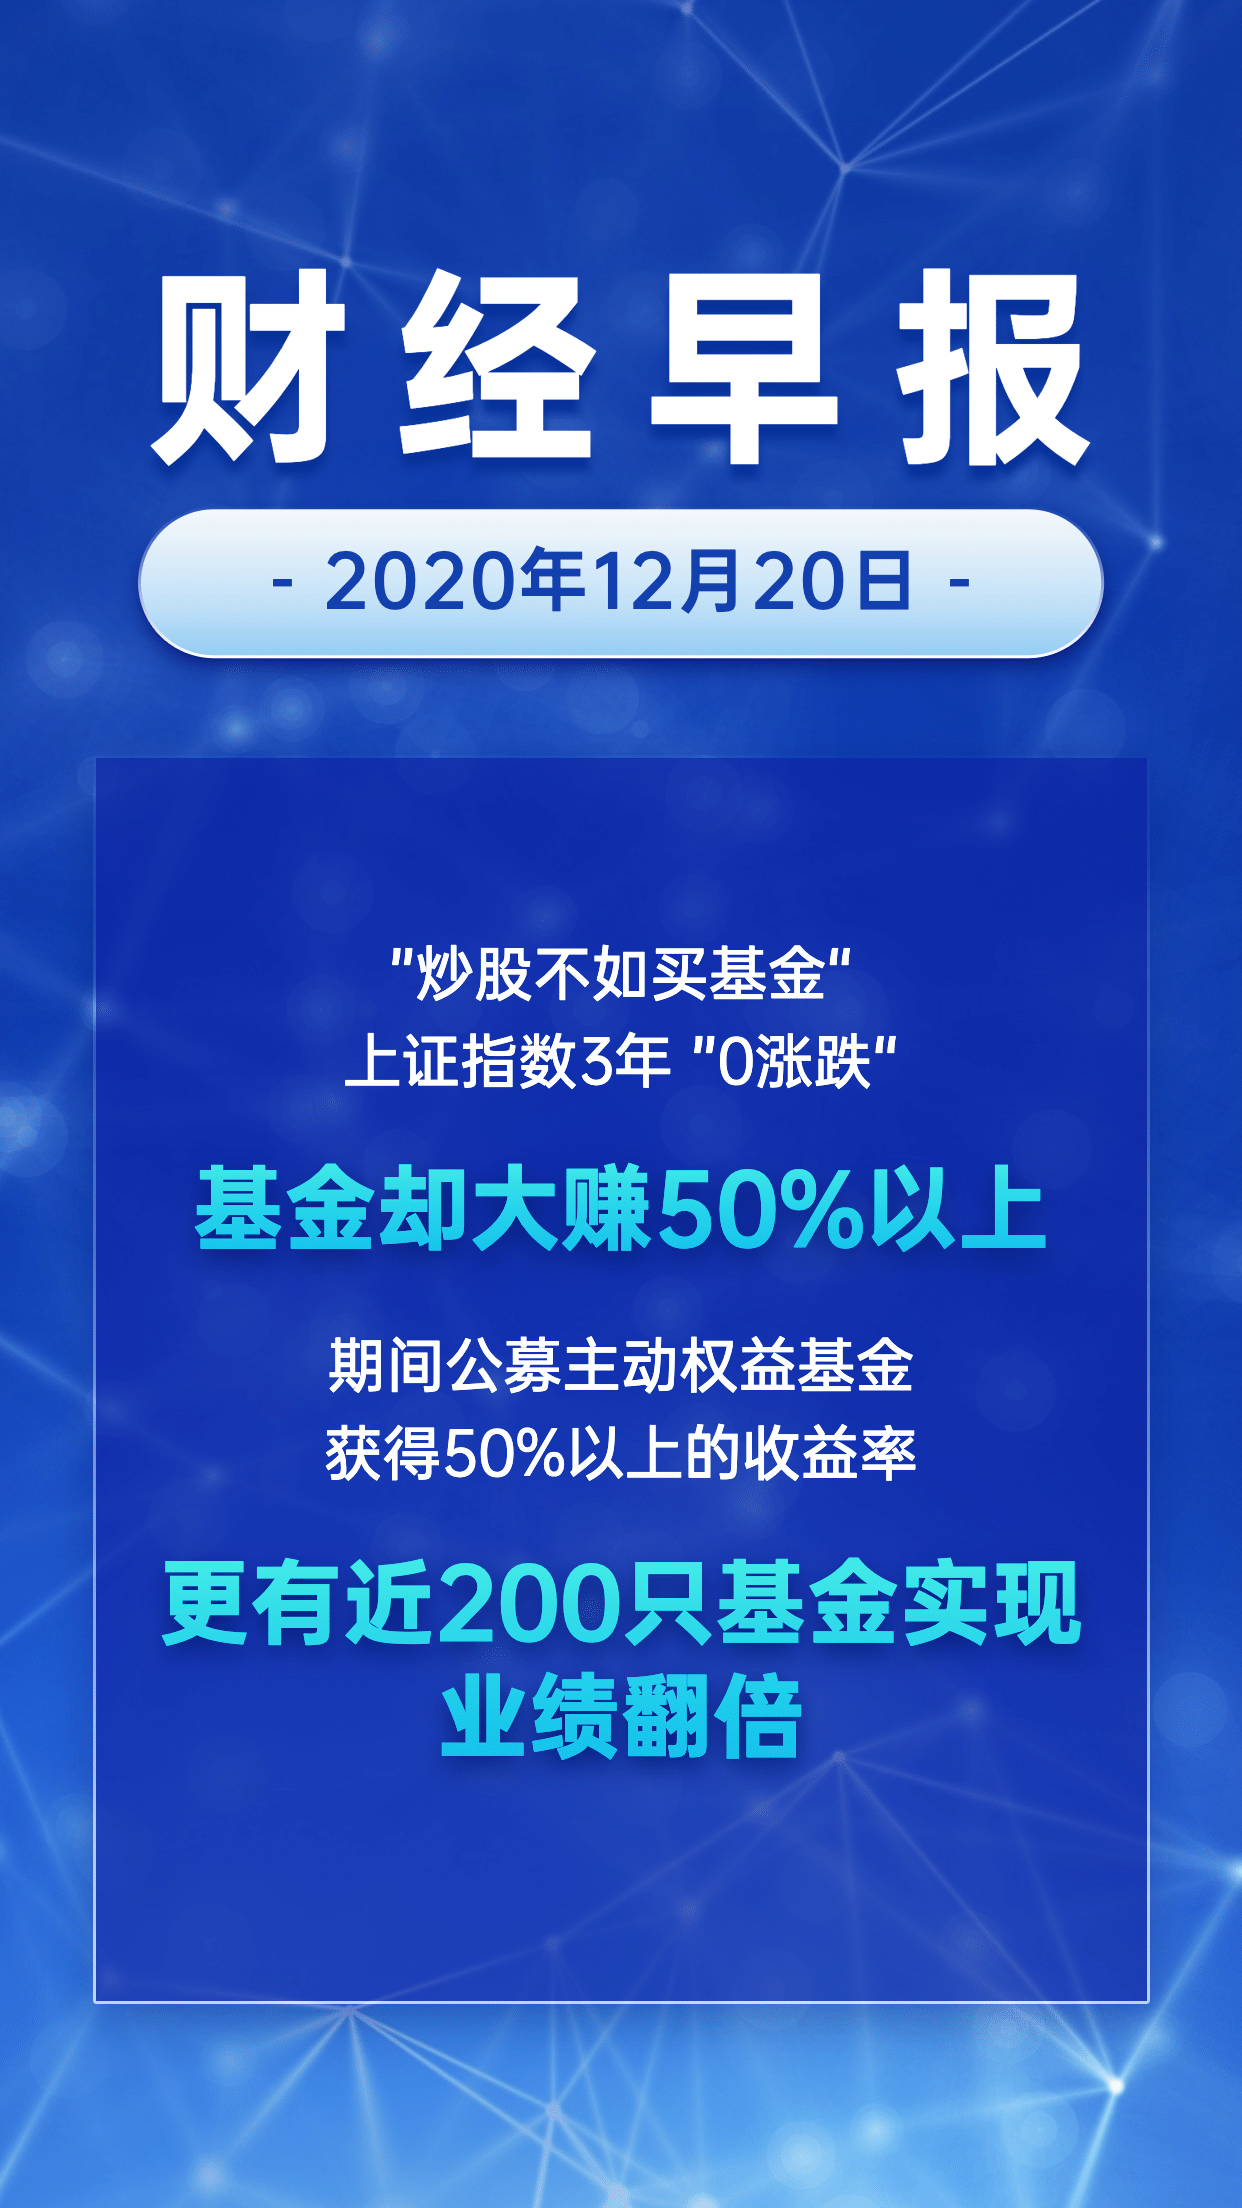 金融行业财经早报蓝色大字海报